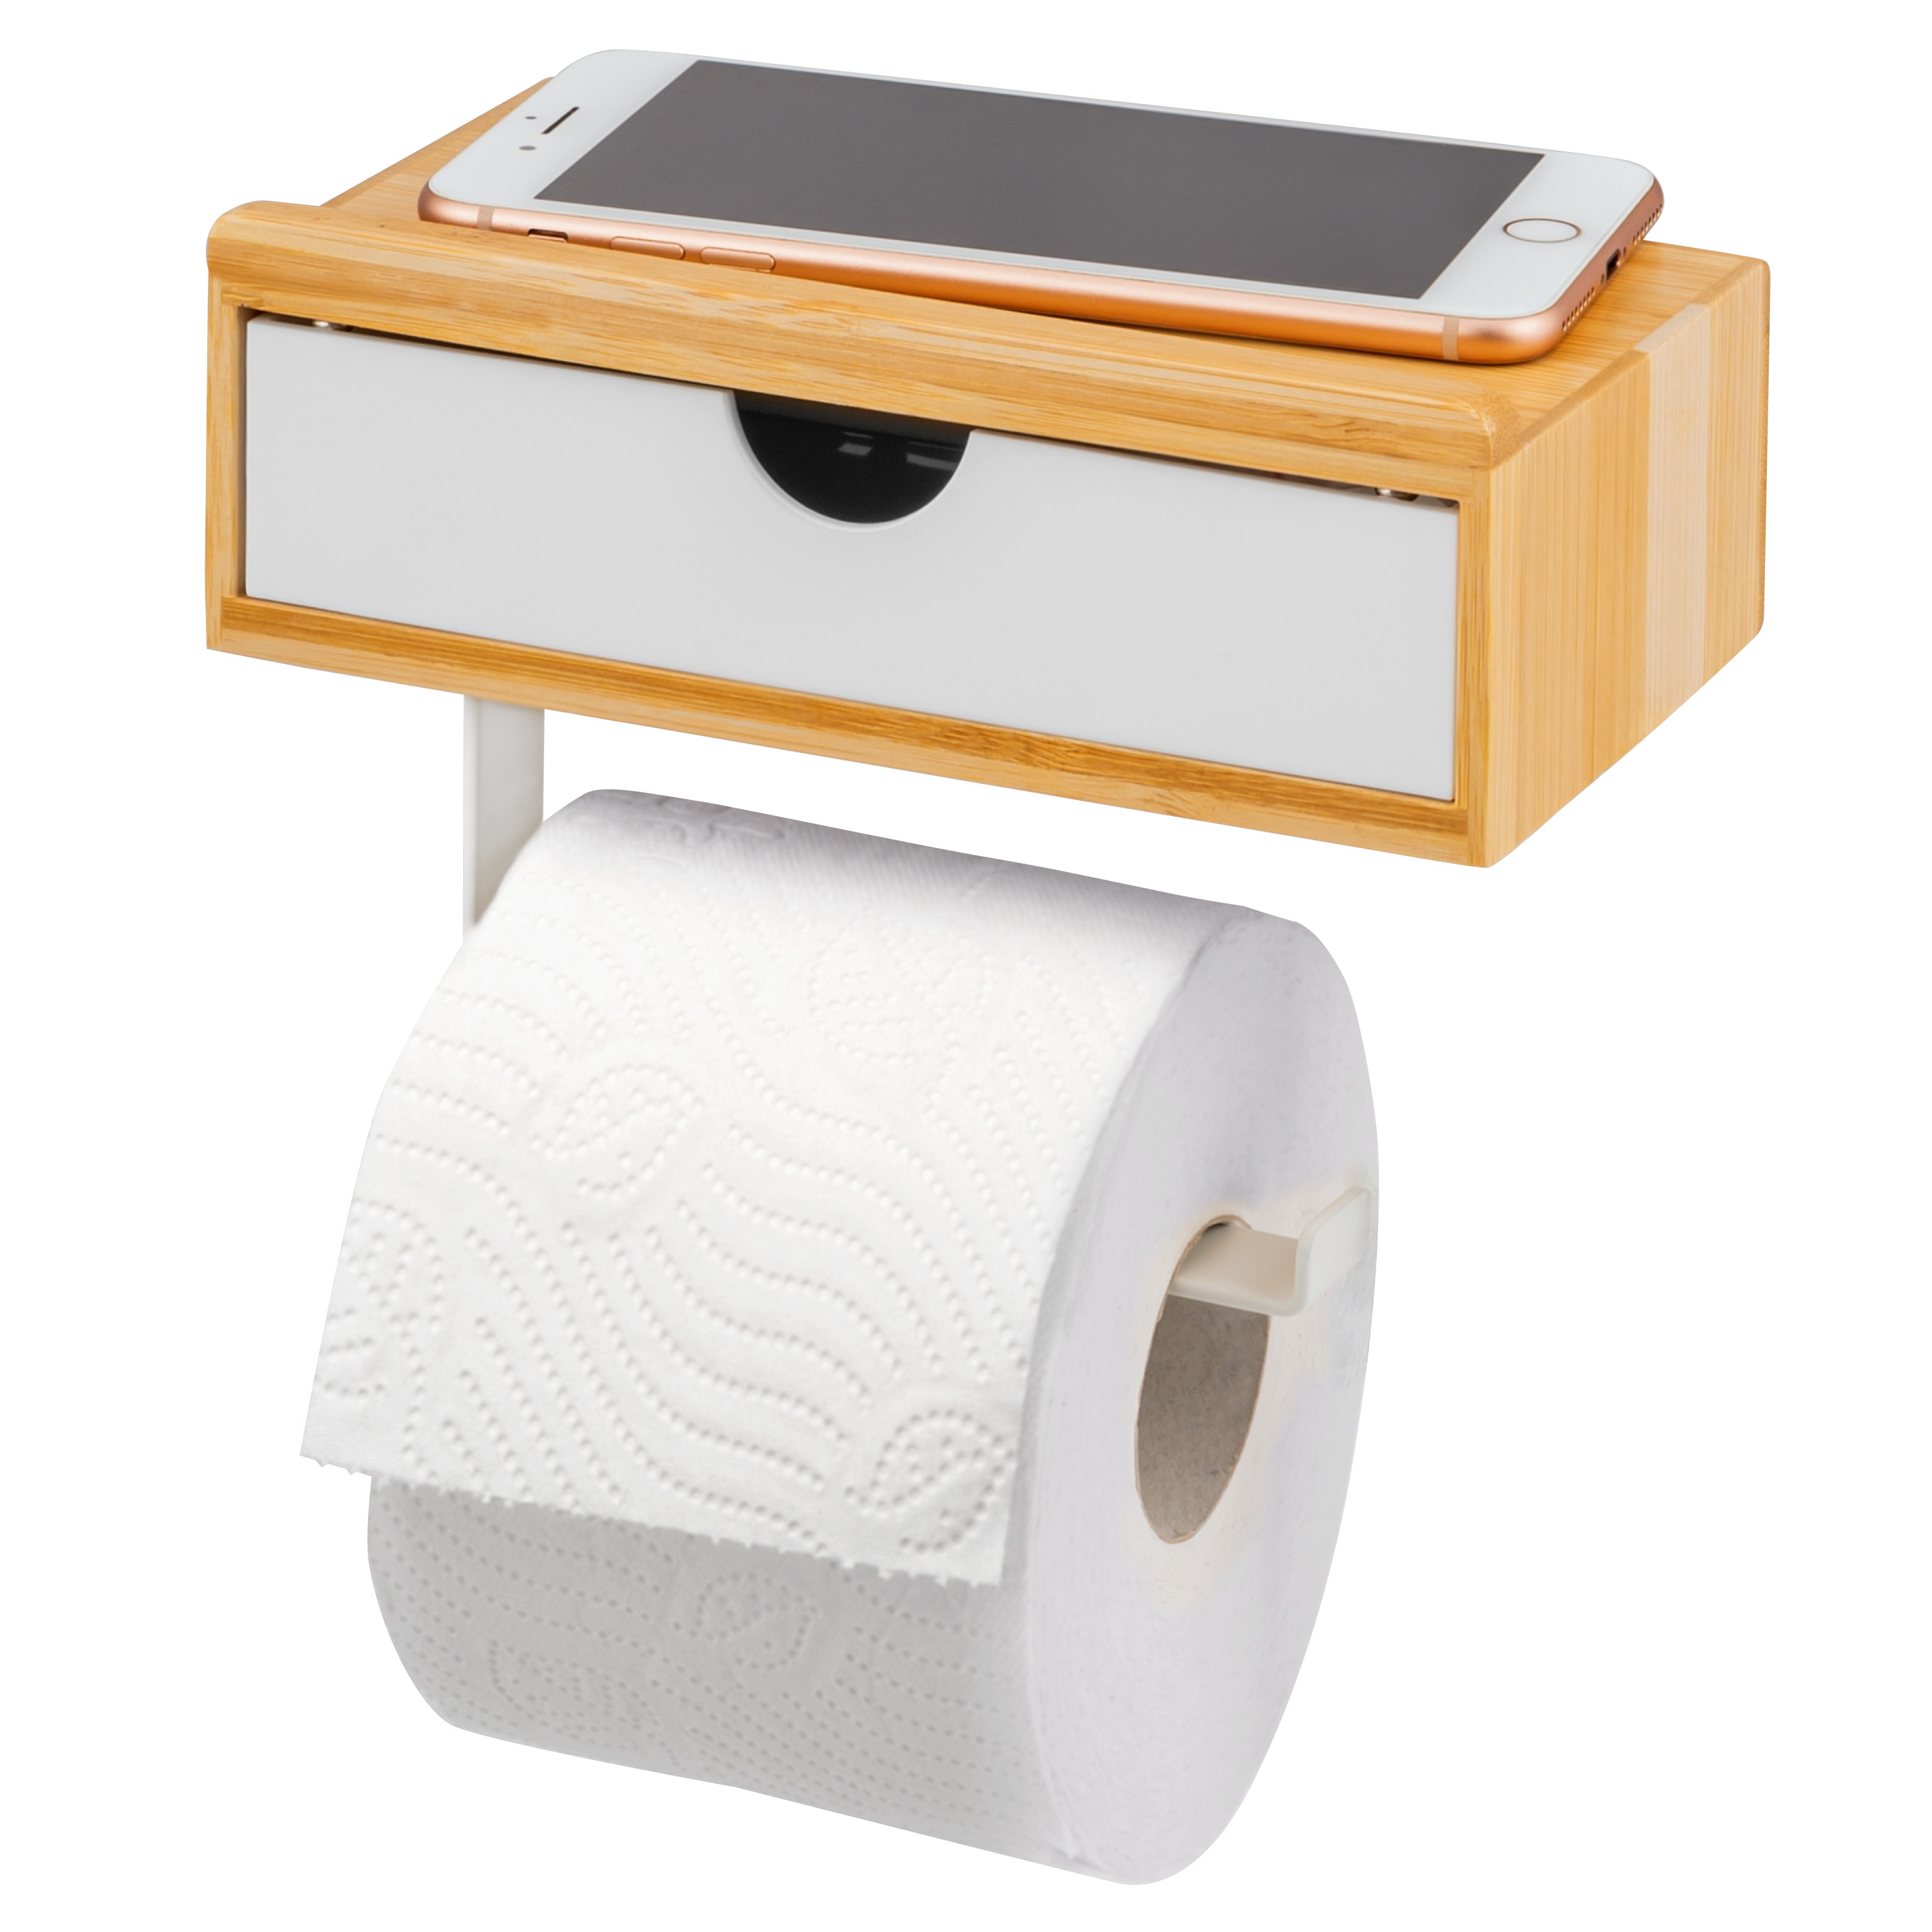 Toilettenpapierhalter, 3in1-Funktion, Feuchttücherbox, Ablage, Bambus/Metall, weiß